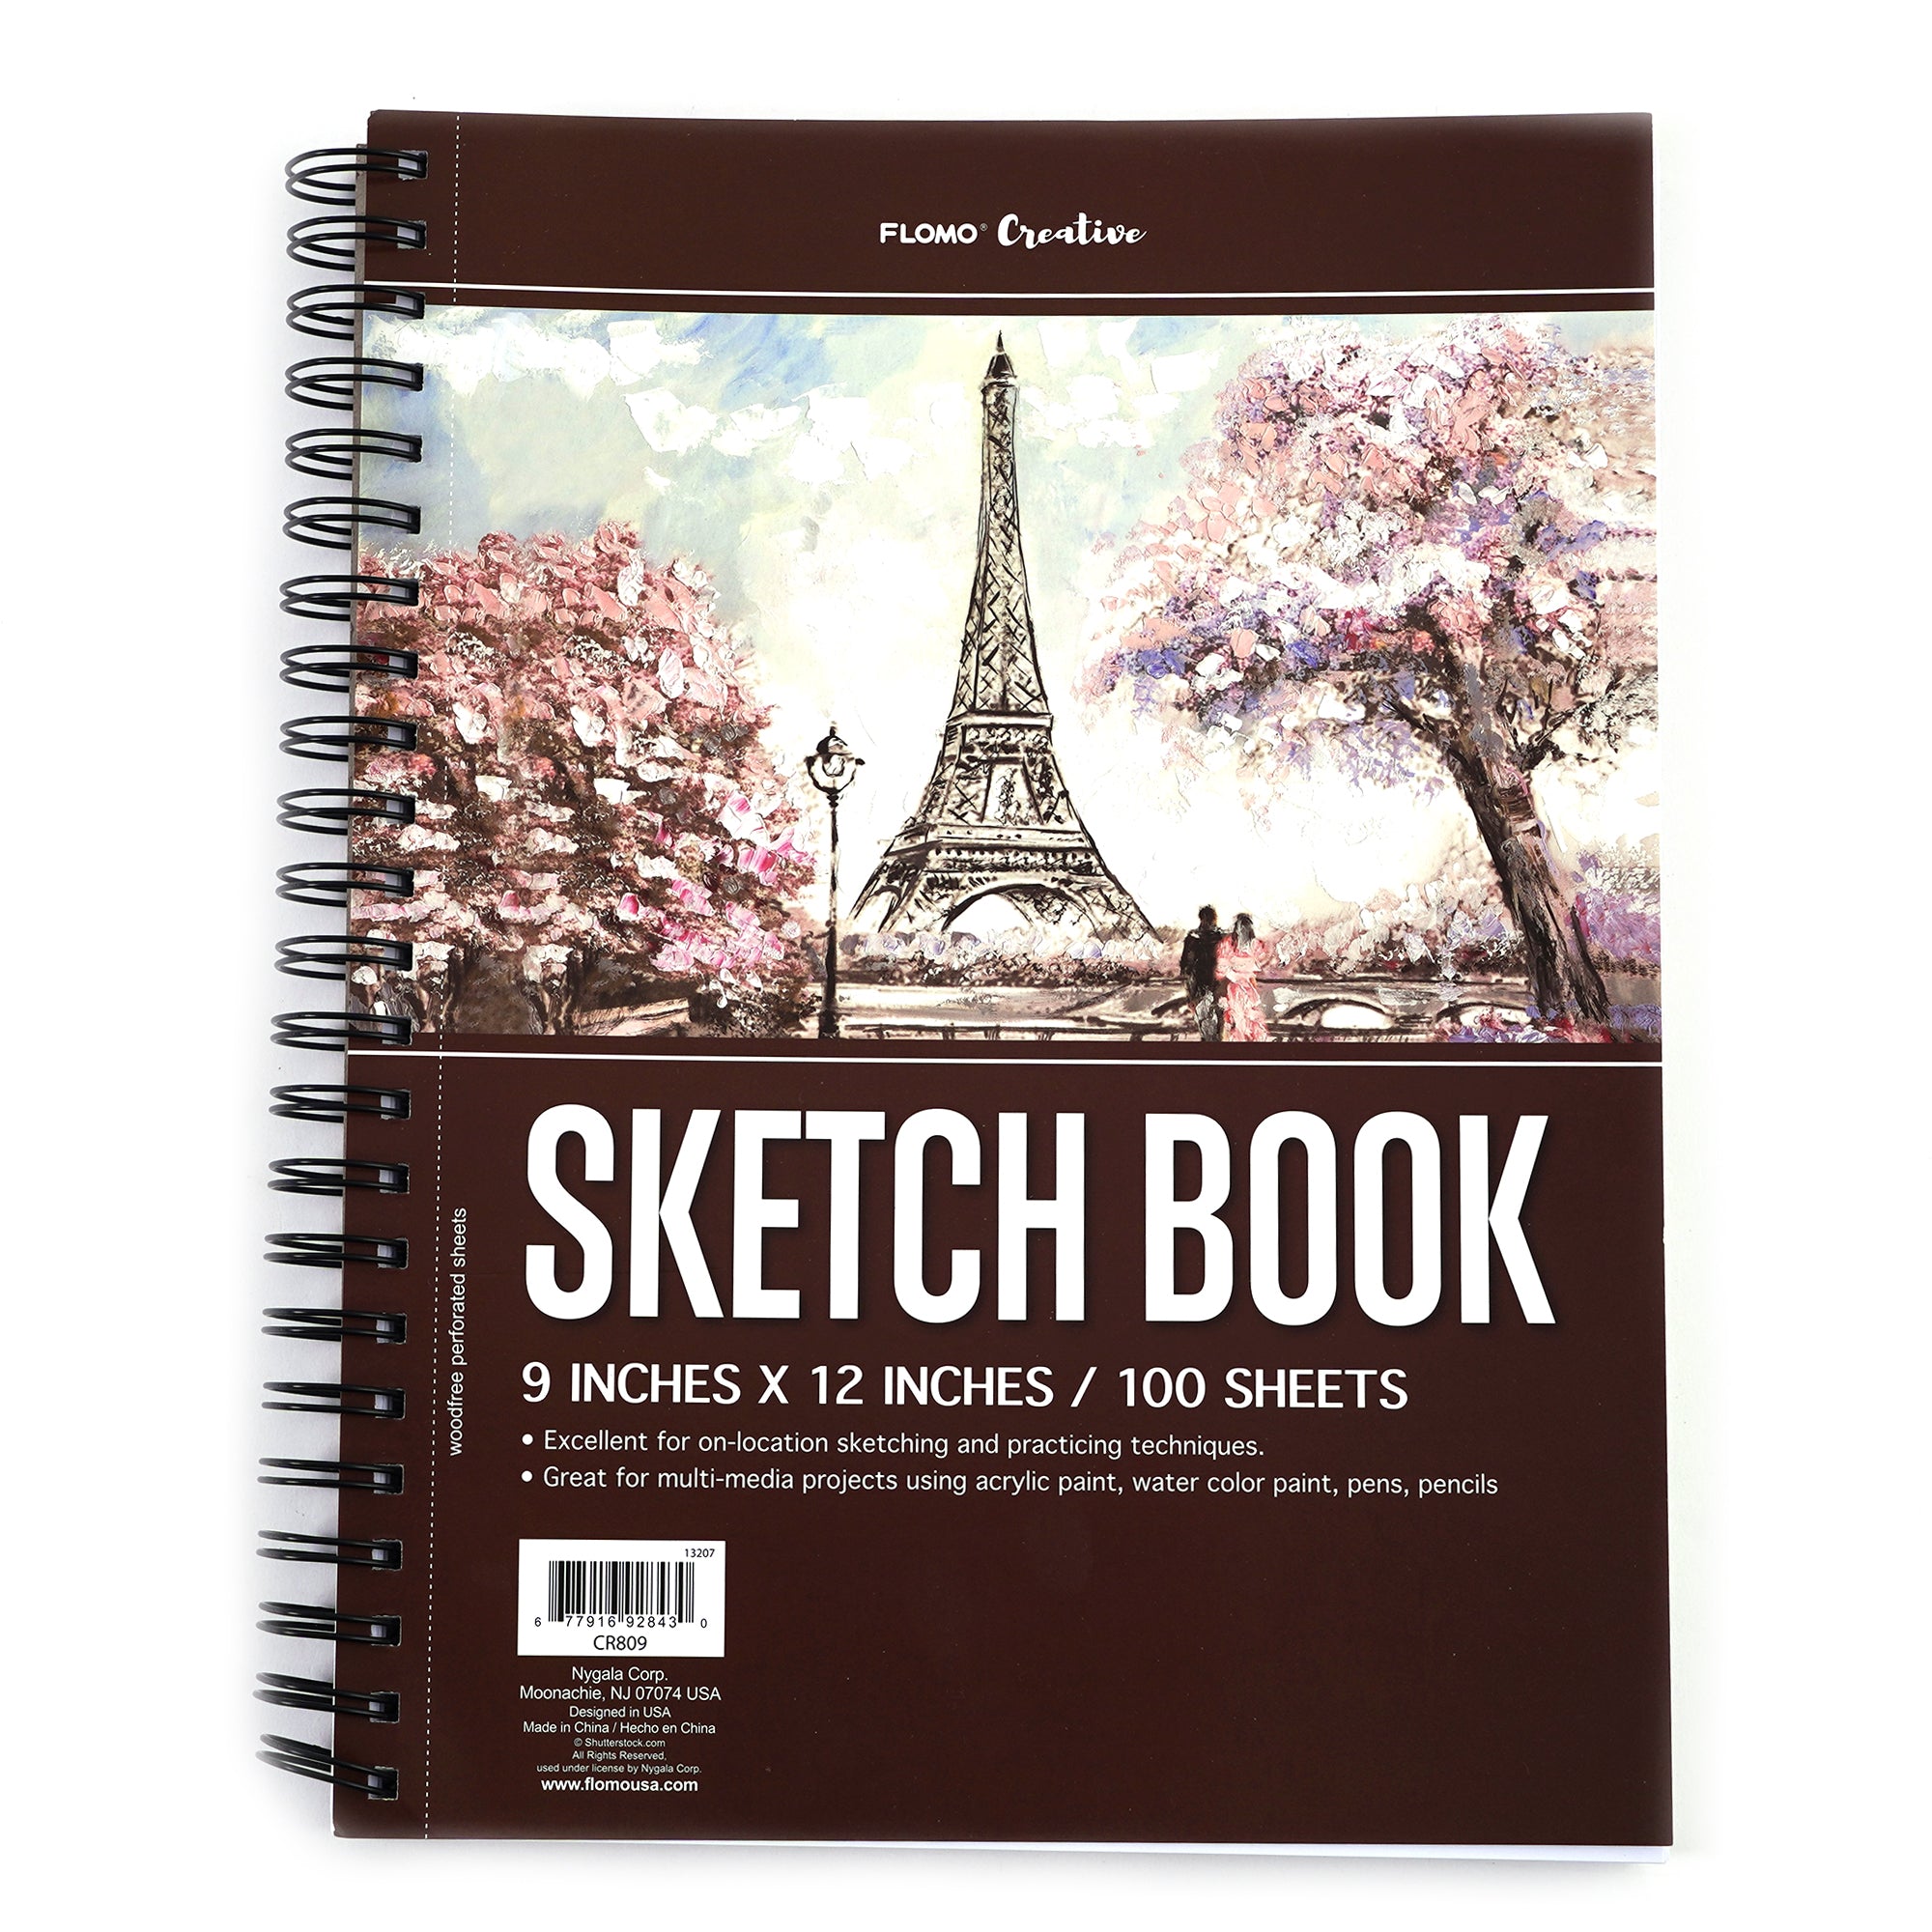 100 Sht/200 Page Sketchbook 9X12, W/12Pk Gel Pens, Hot Stamp Good Mood